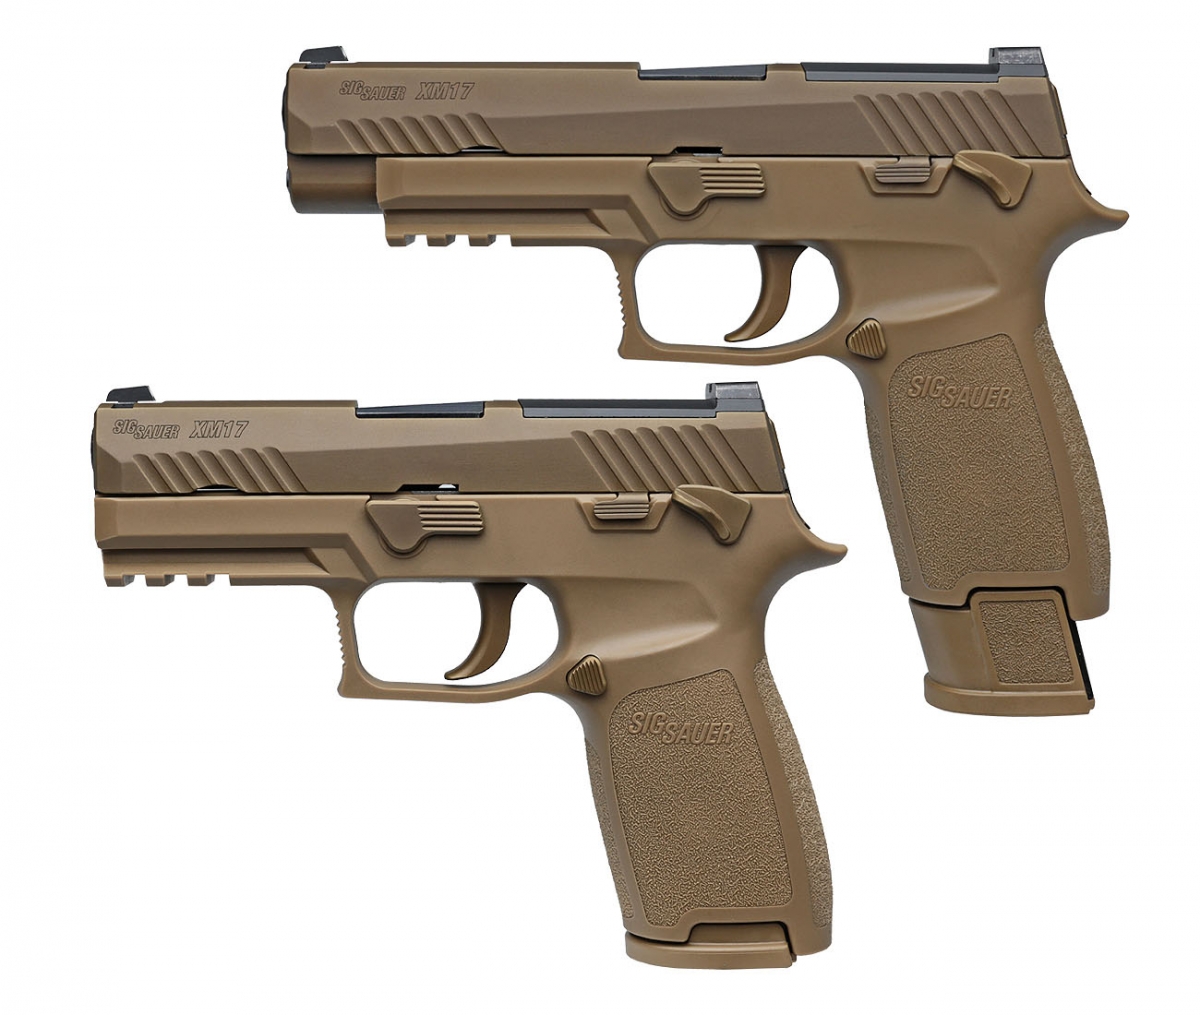 Le SIG Sauer M17 ed M18 sono due pistole semi-automatiche basate sulla P320, costruite sulla base di un fusto polimerico in comune e compatibili con canne e carrelli di diversa lunghezza per adattarsi alle varie necessità operative